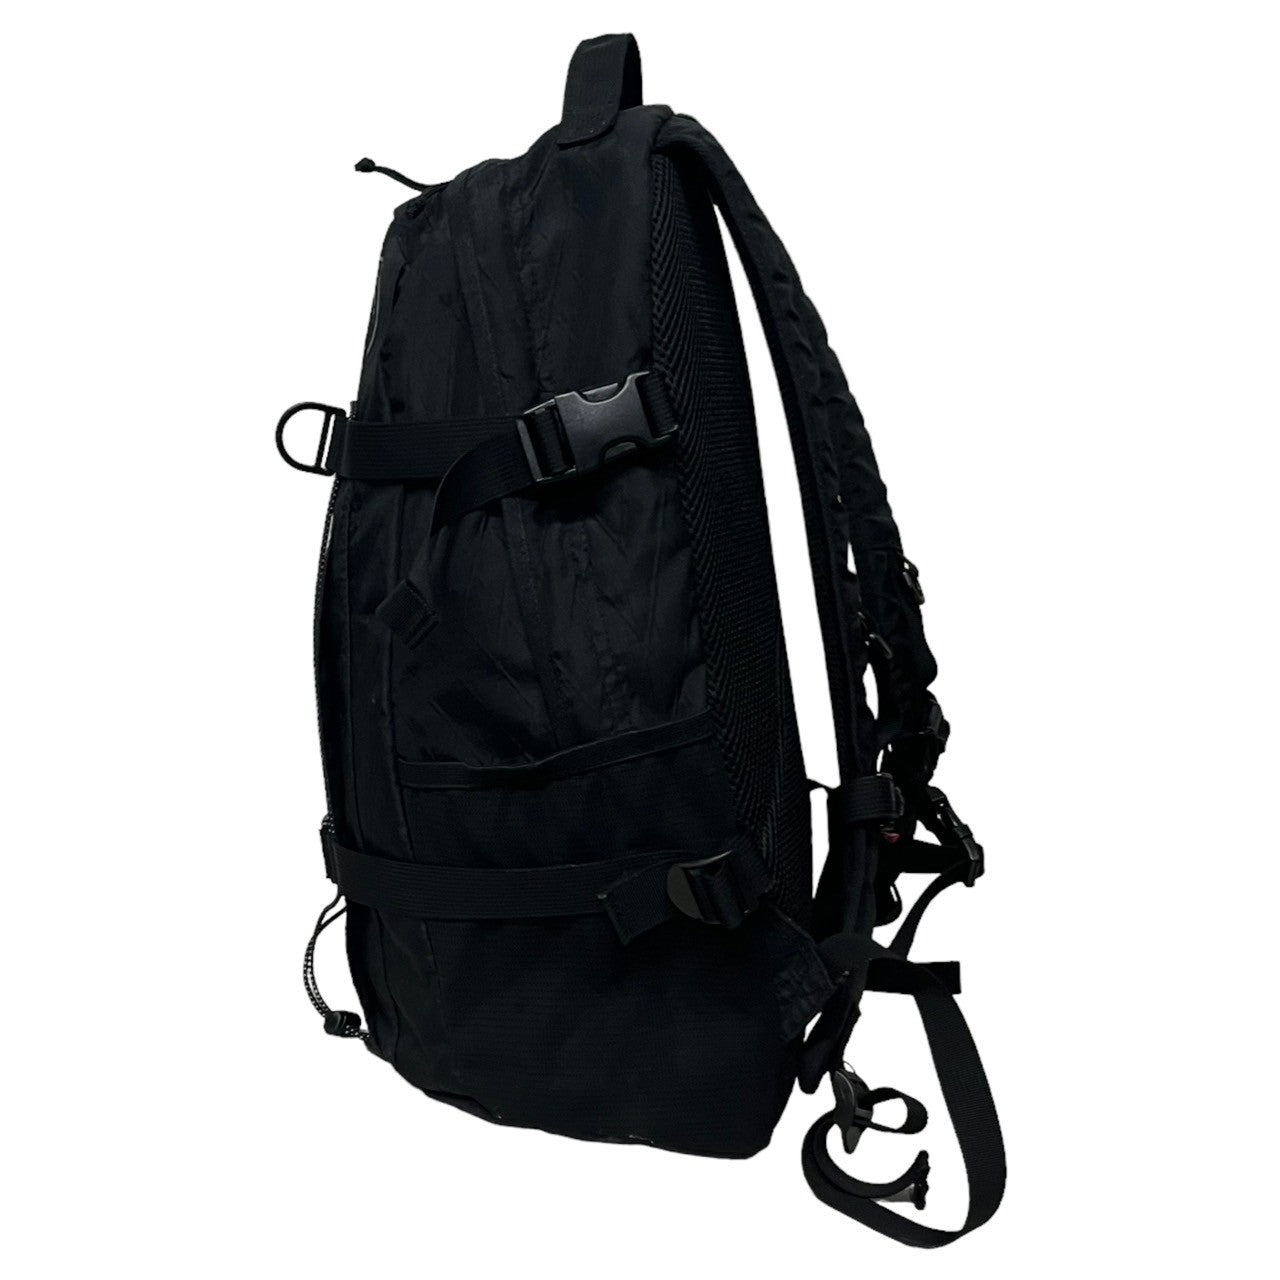 SUPREME(シュプリーム) 18FW Backpack "Black" ロゴ パックパック ブラック 18AW リュック バッグ デイパック